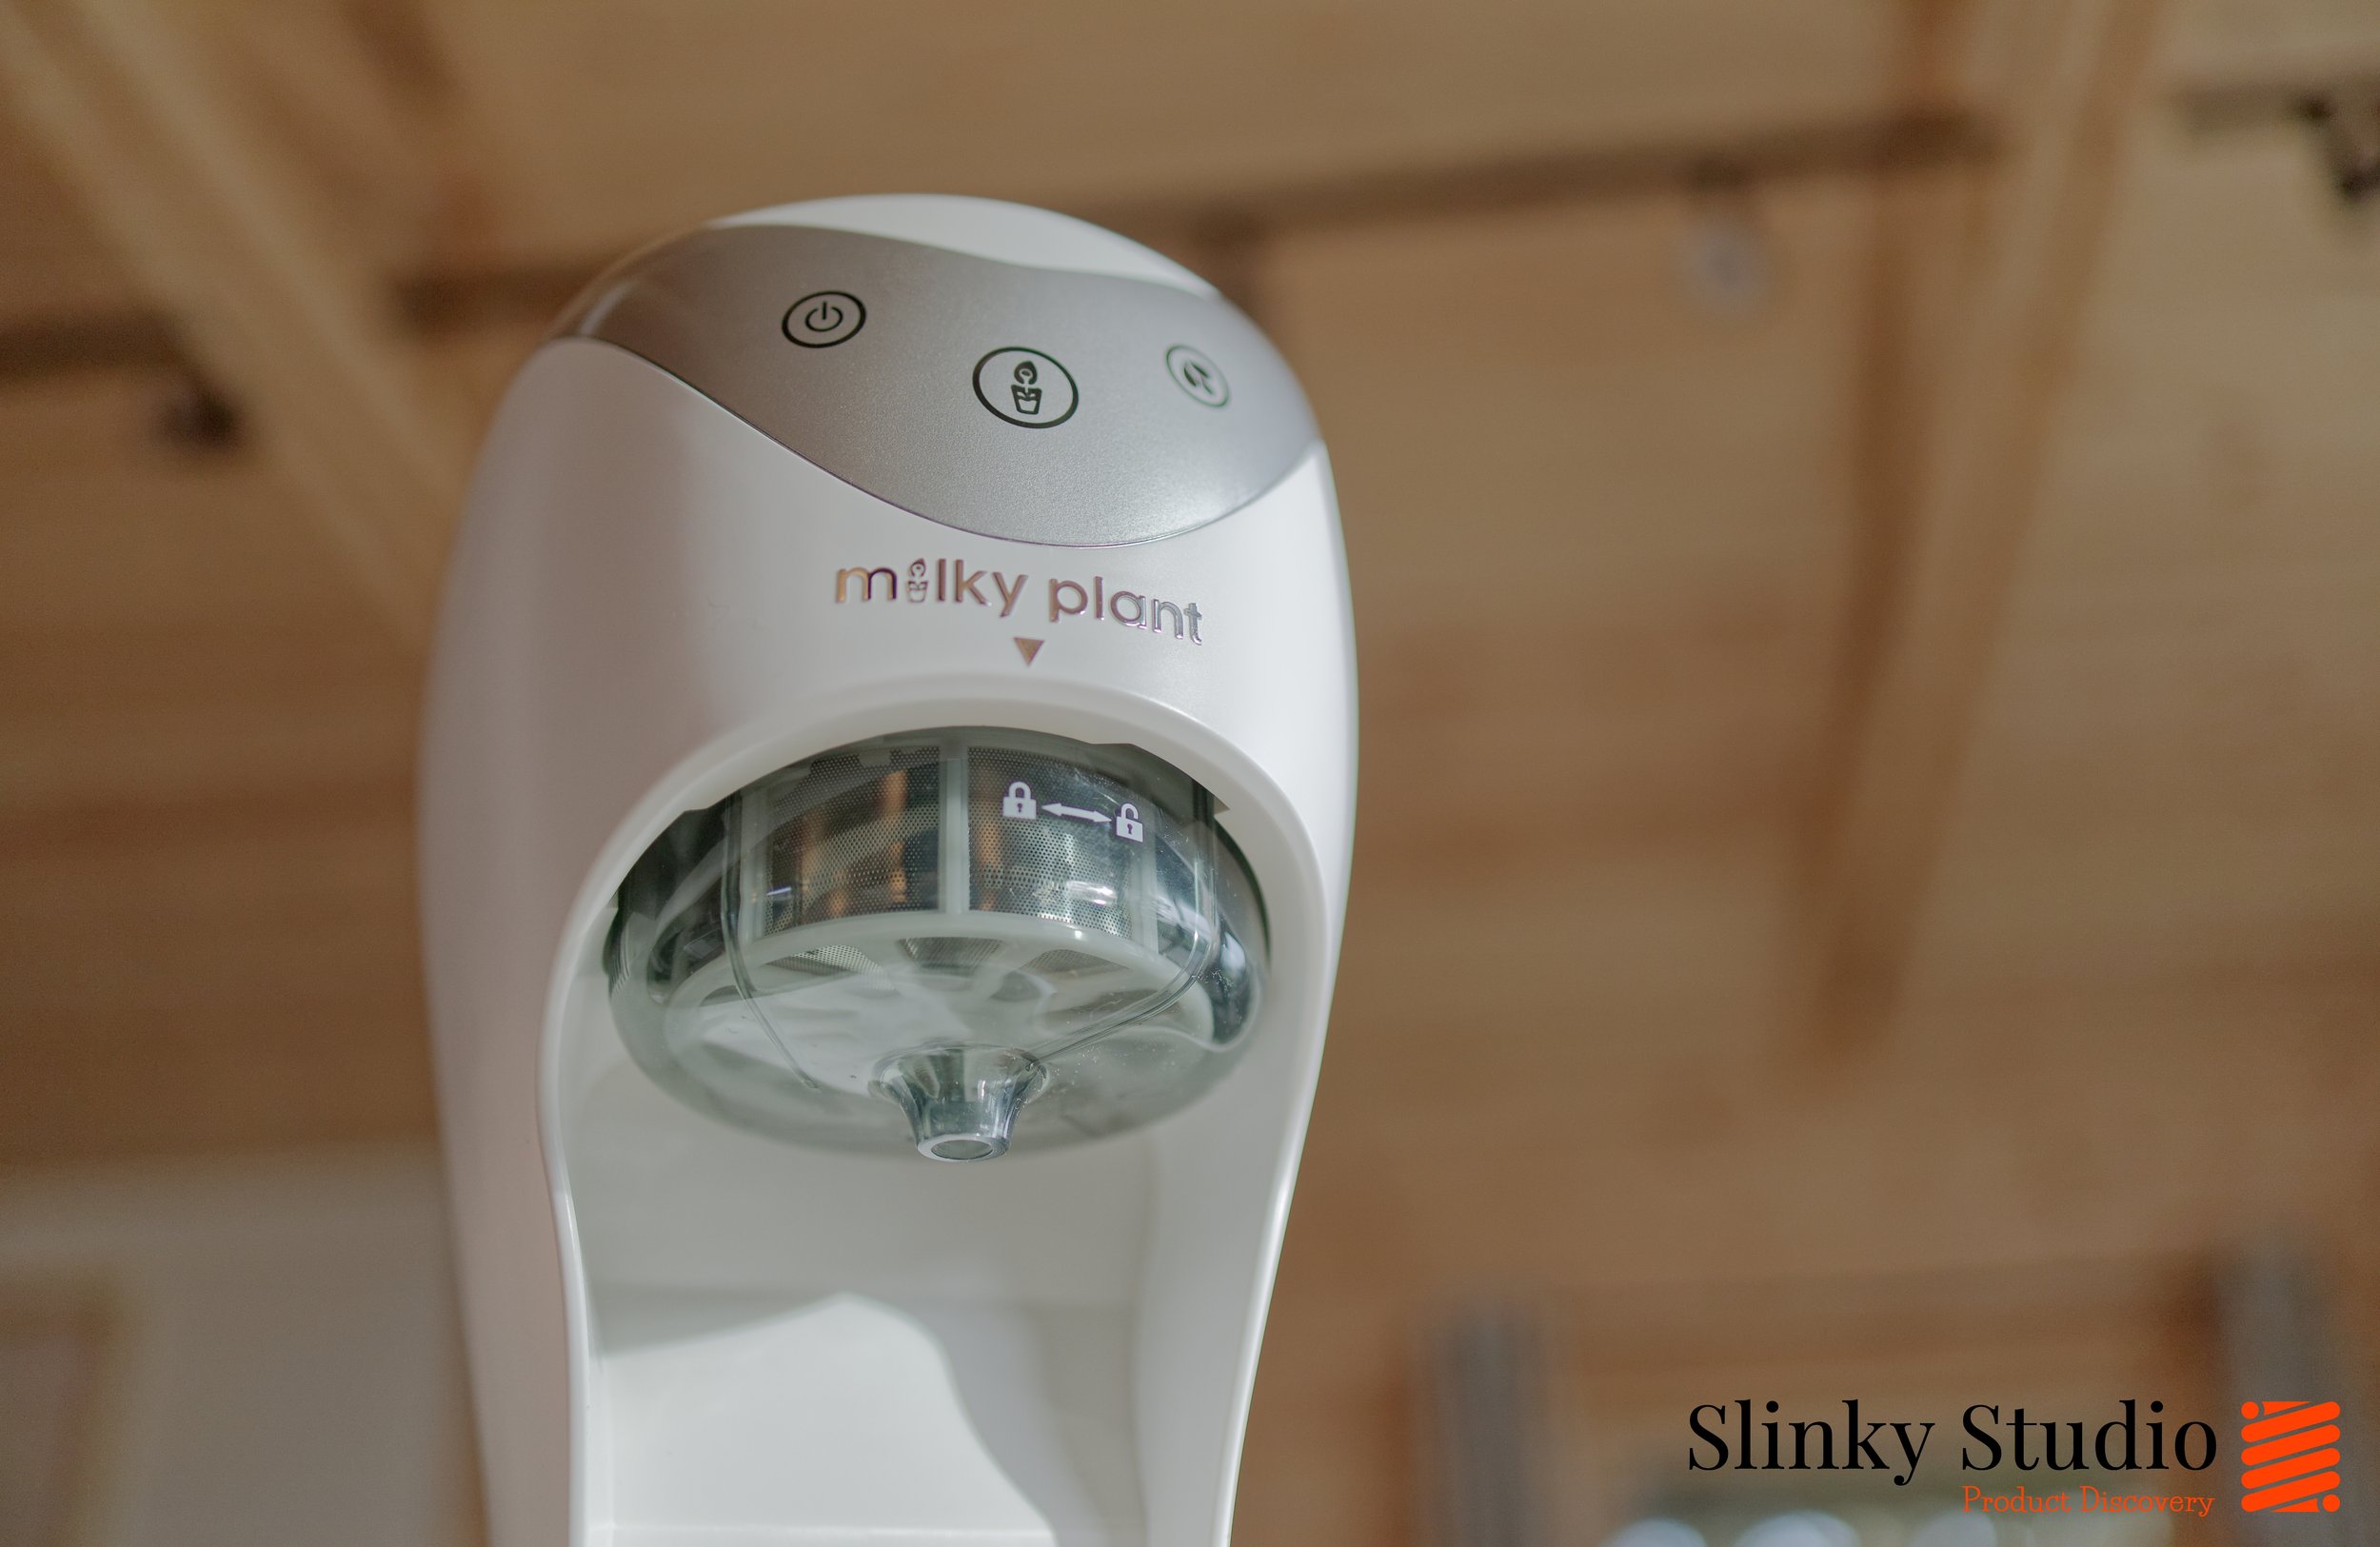 Milky Plant Vegan Milk Maker Machine Plastic Filter Dispenser.jpg